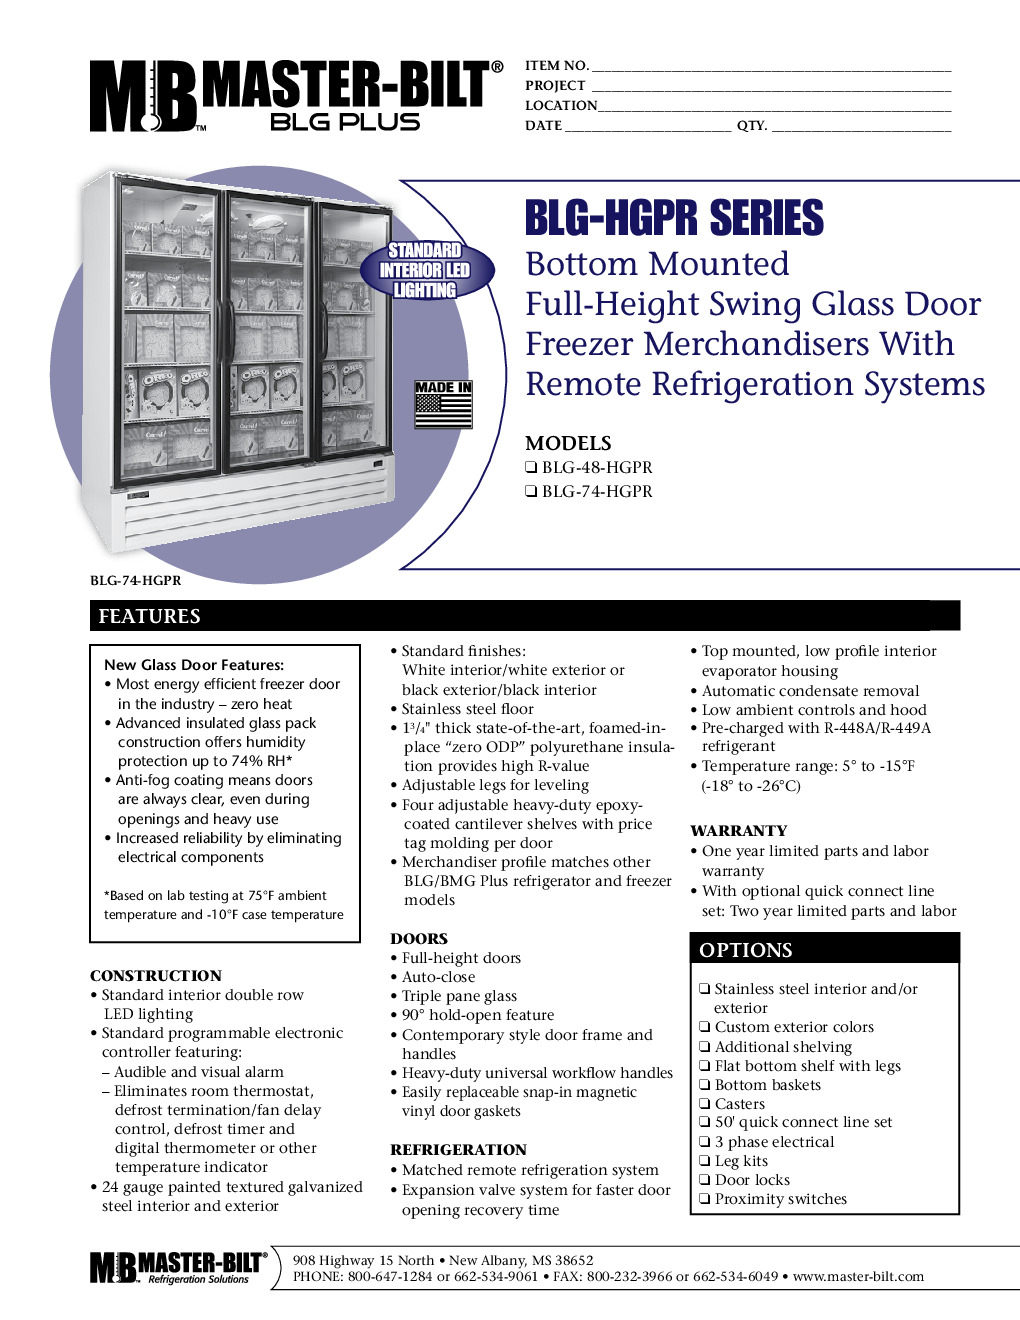 Master-Bilt BLG-48-HGPR Merchandiser Freezer